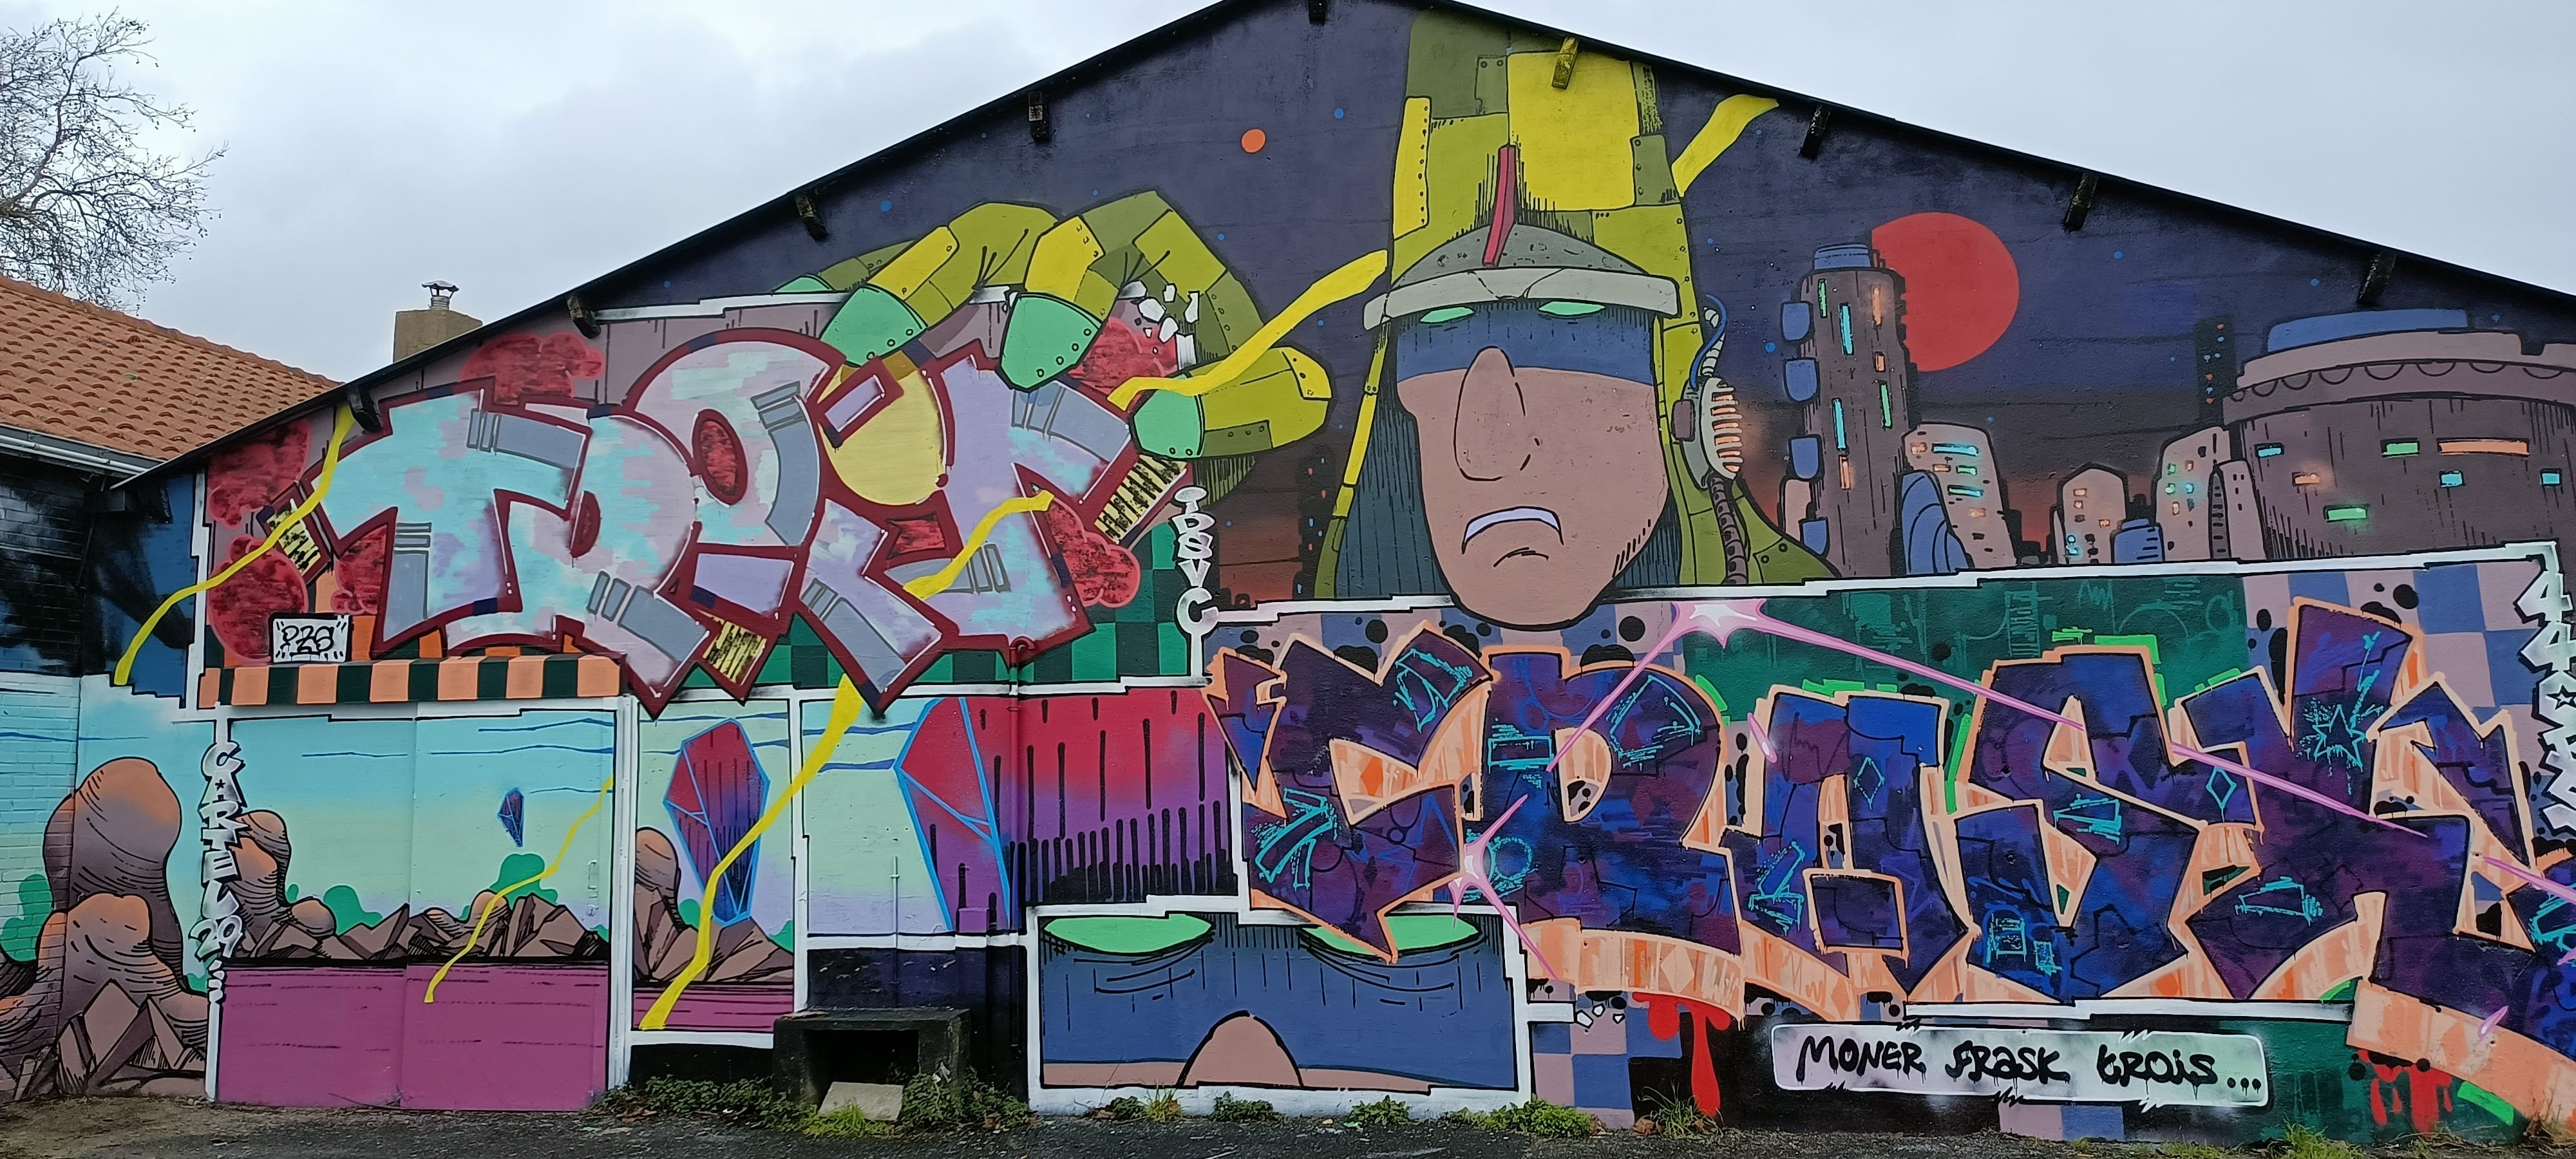 Graffiti 5522  de Moner capturé par Rabot à Nantes France